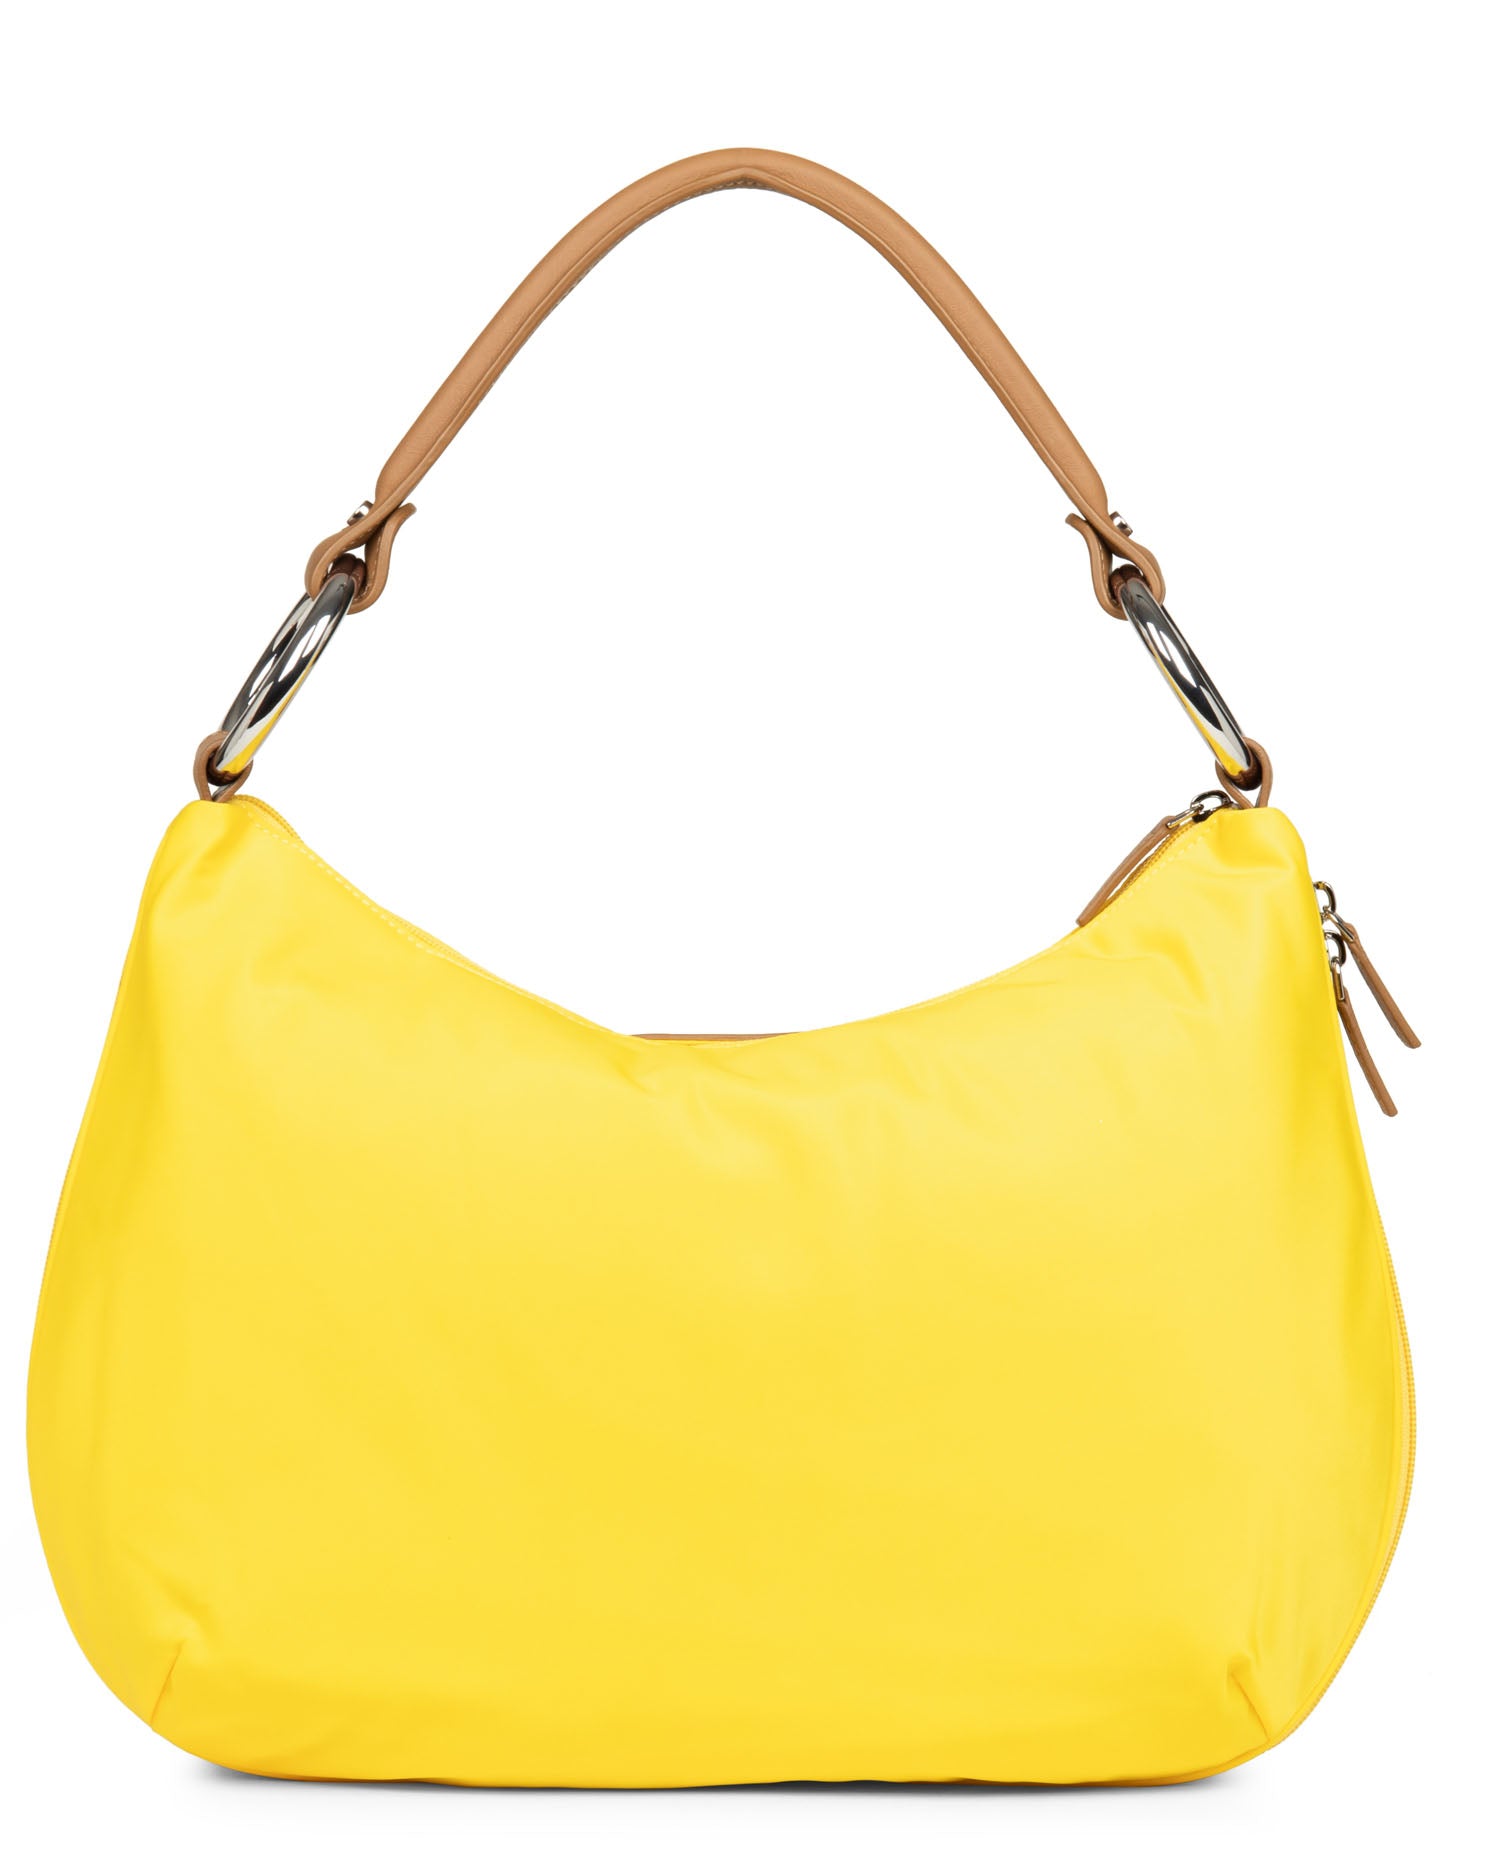 handle base #couleur_jaune